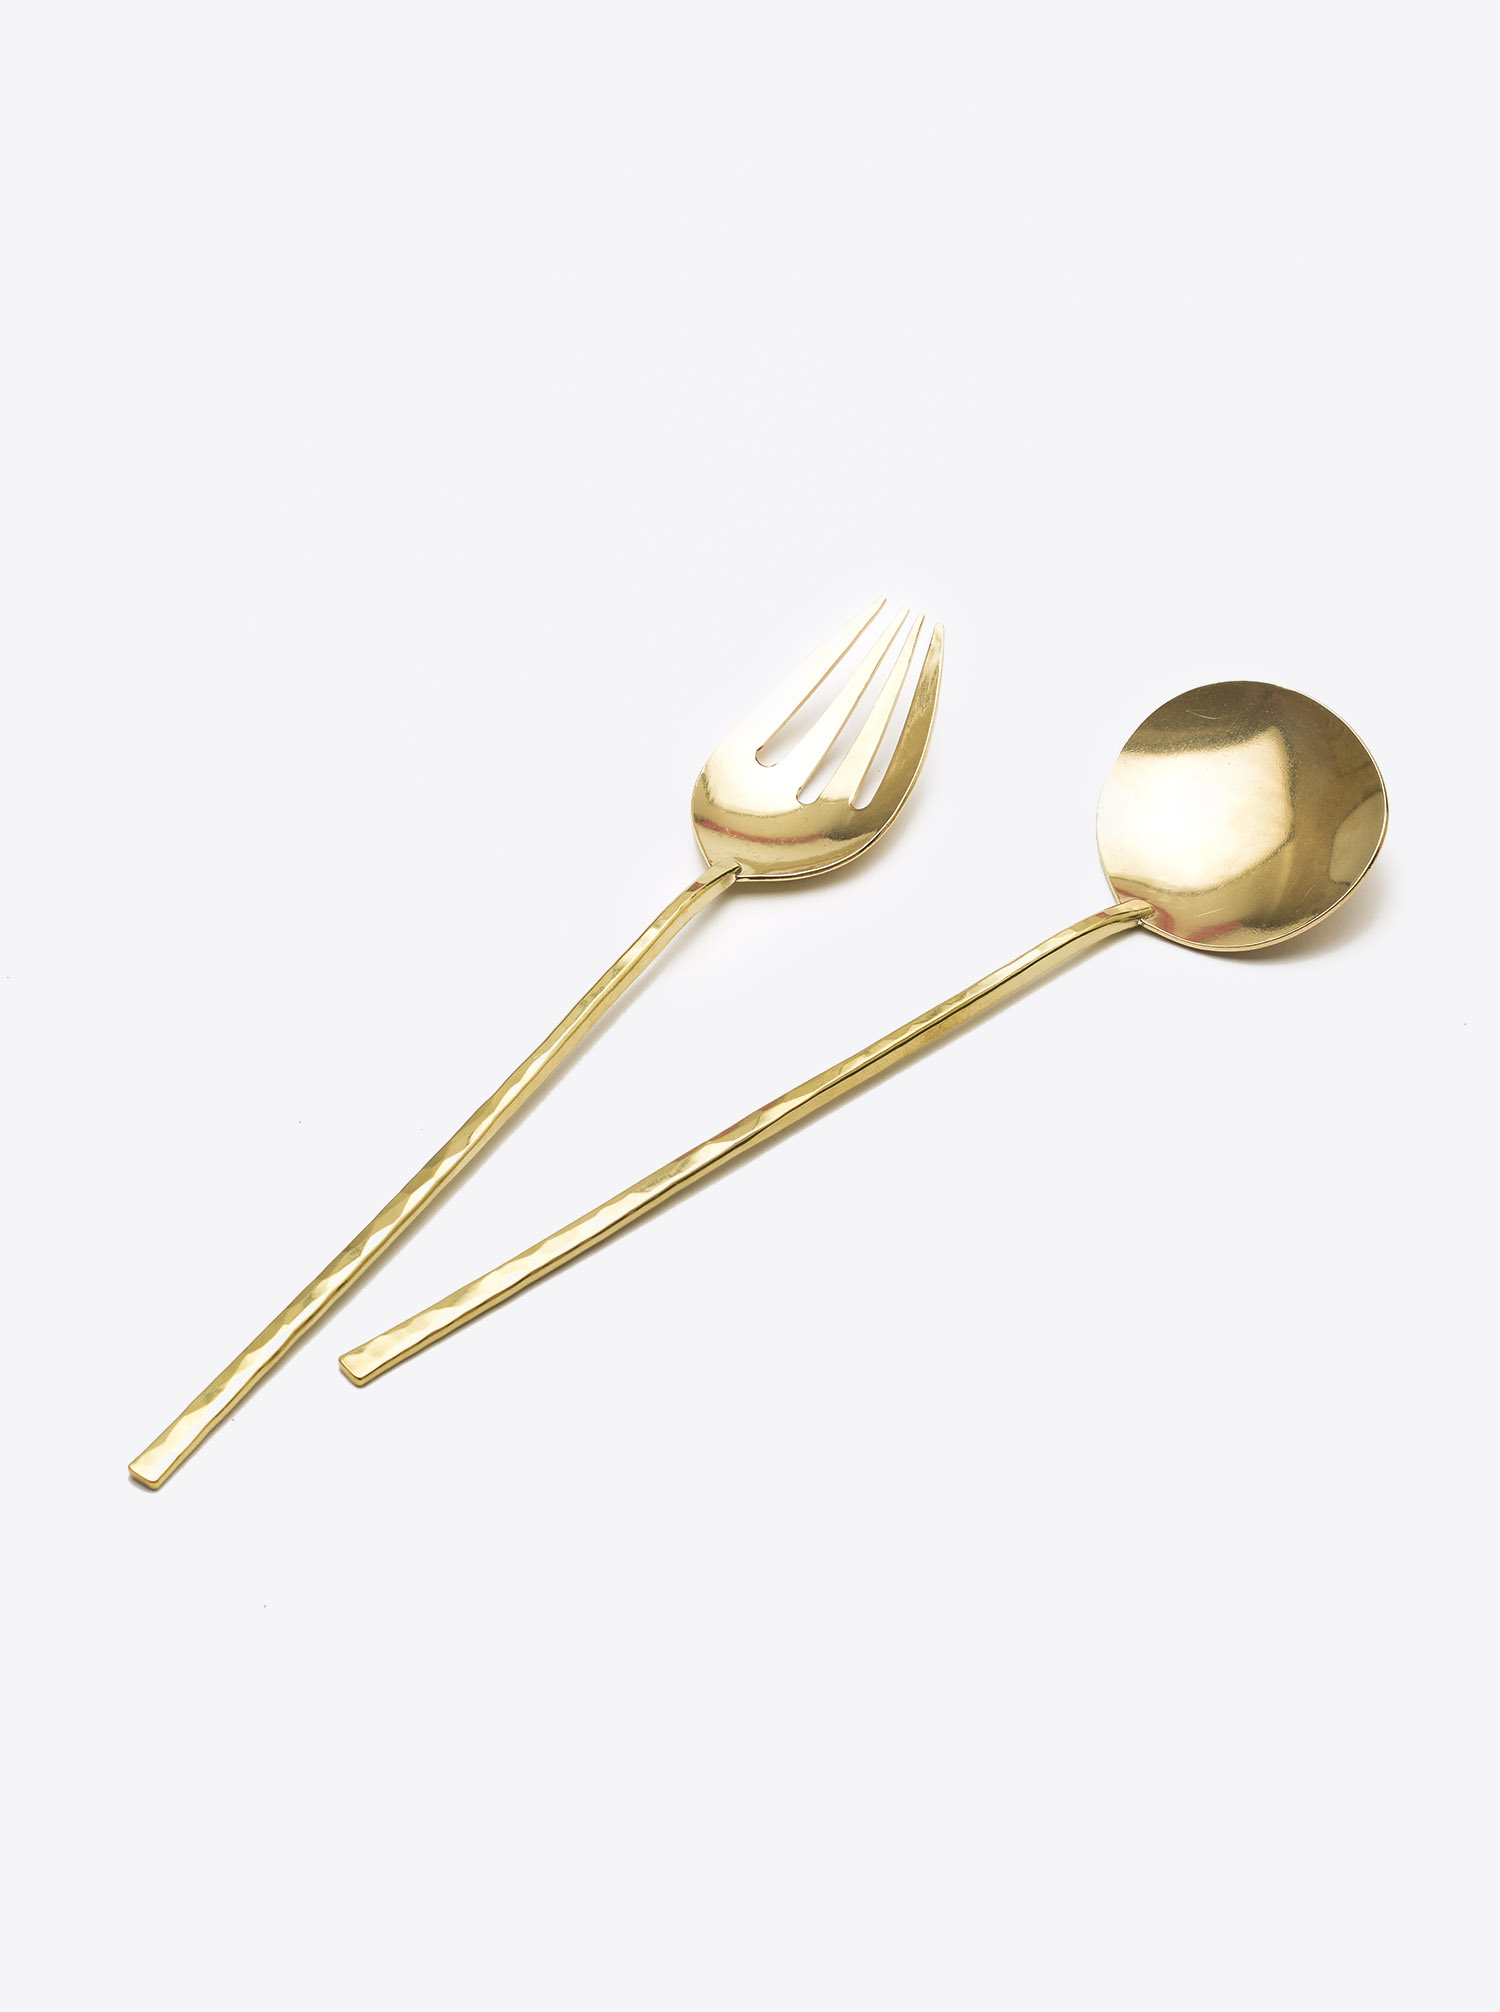 Presenting Cutlery Brass